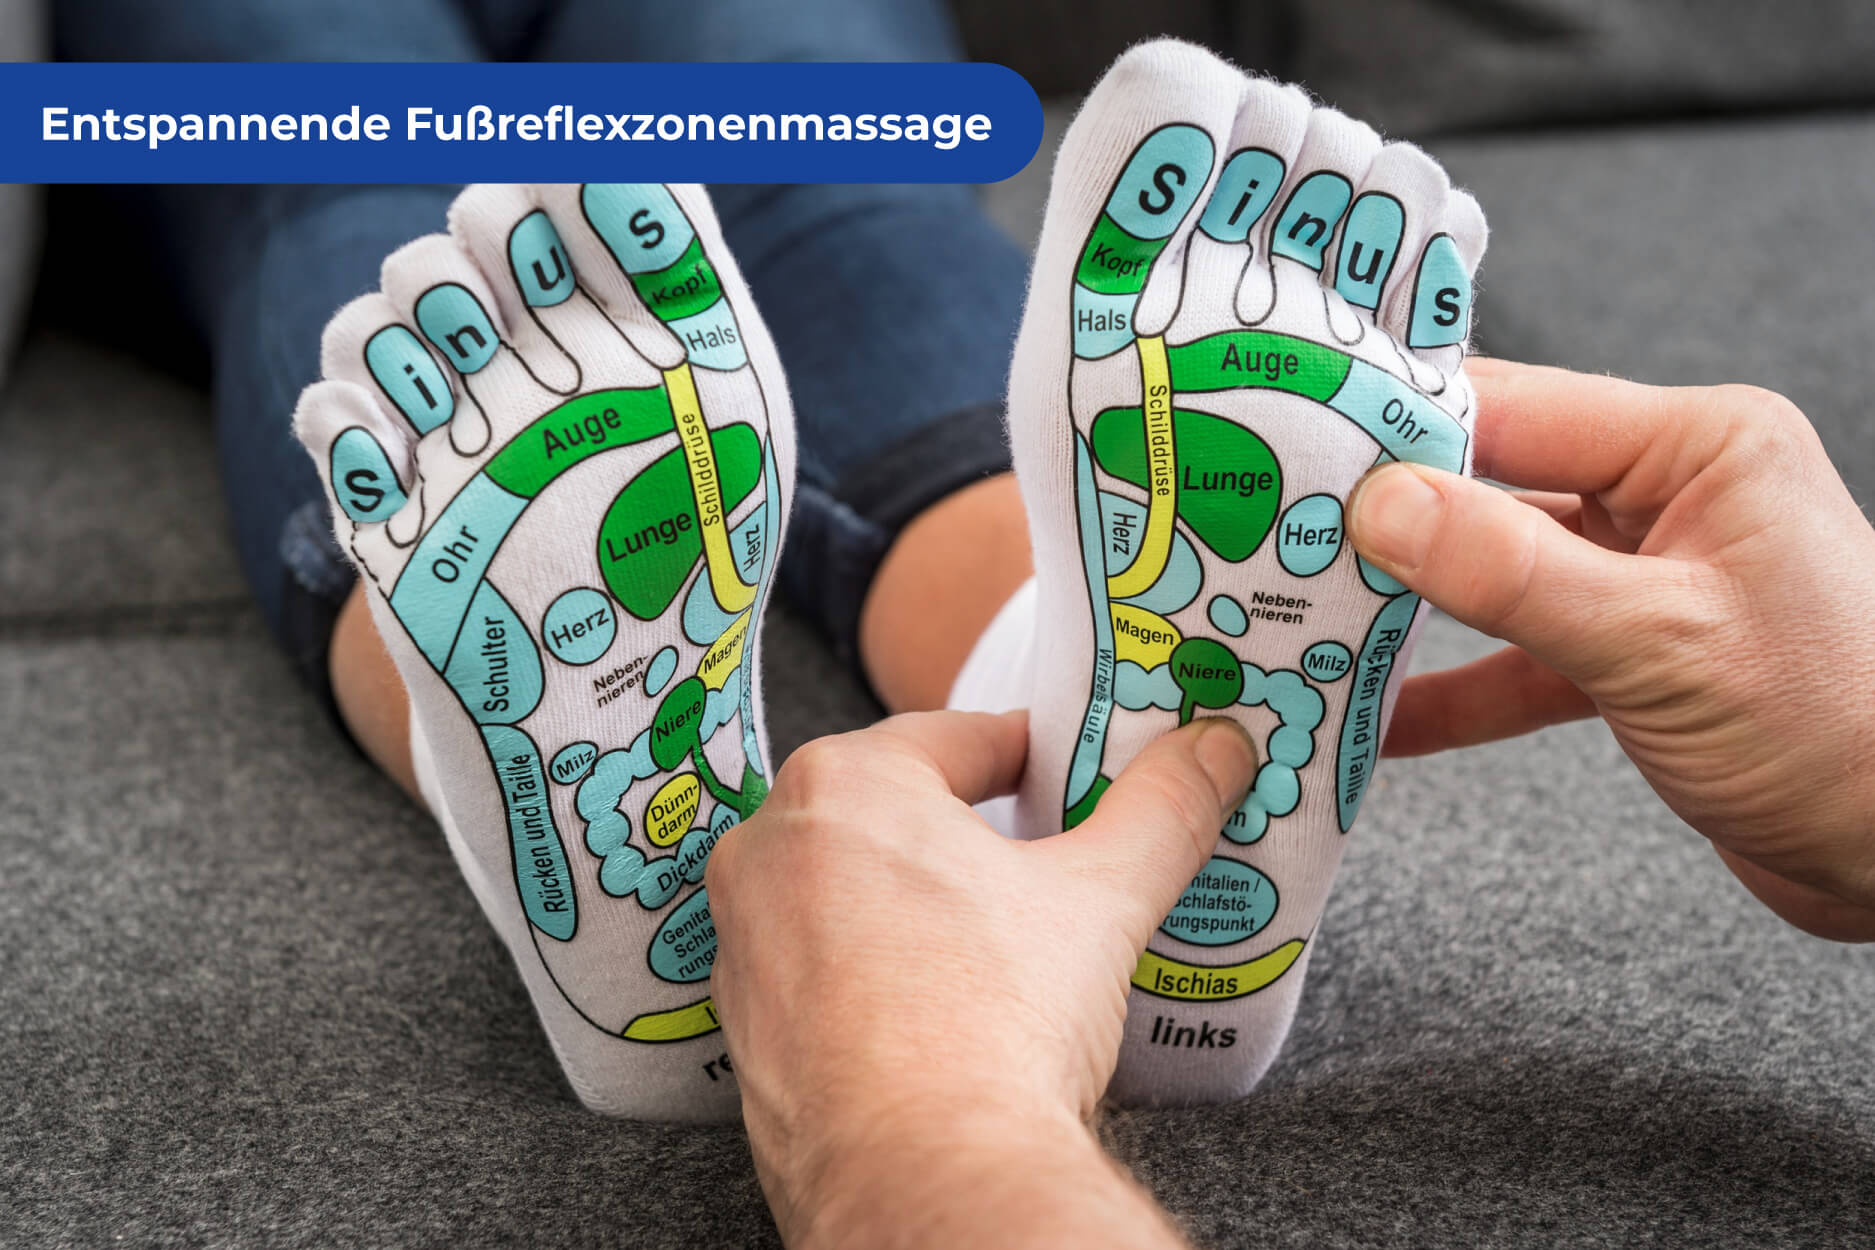 Fußreflexzonen Massage Set mit Massagematte und beschrifteten Massagesocken, Größe L (42-44)